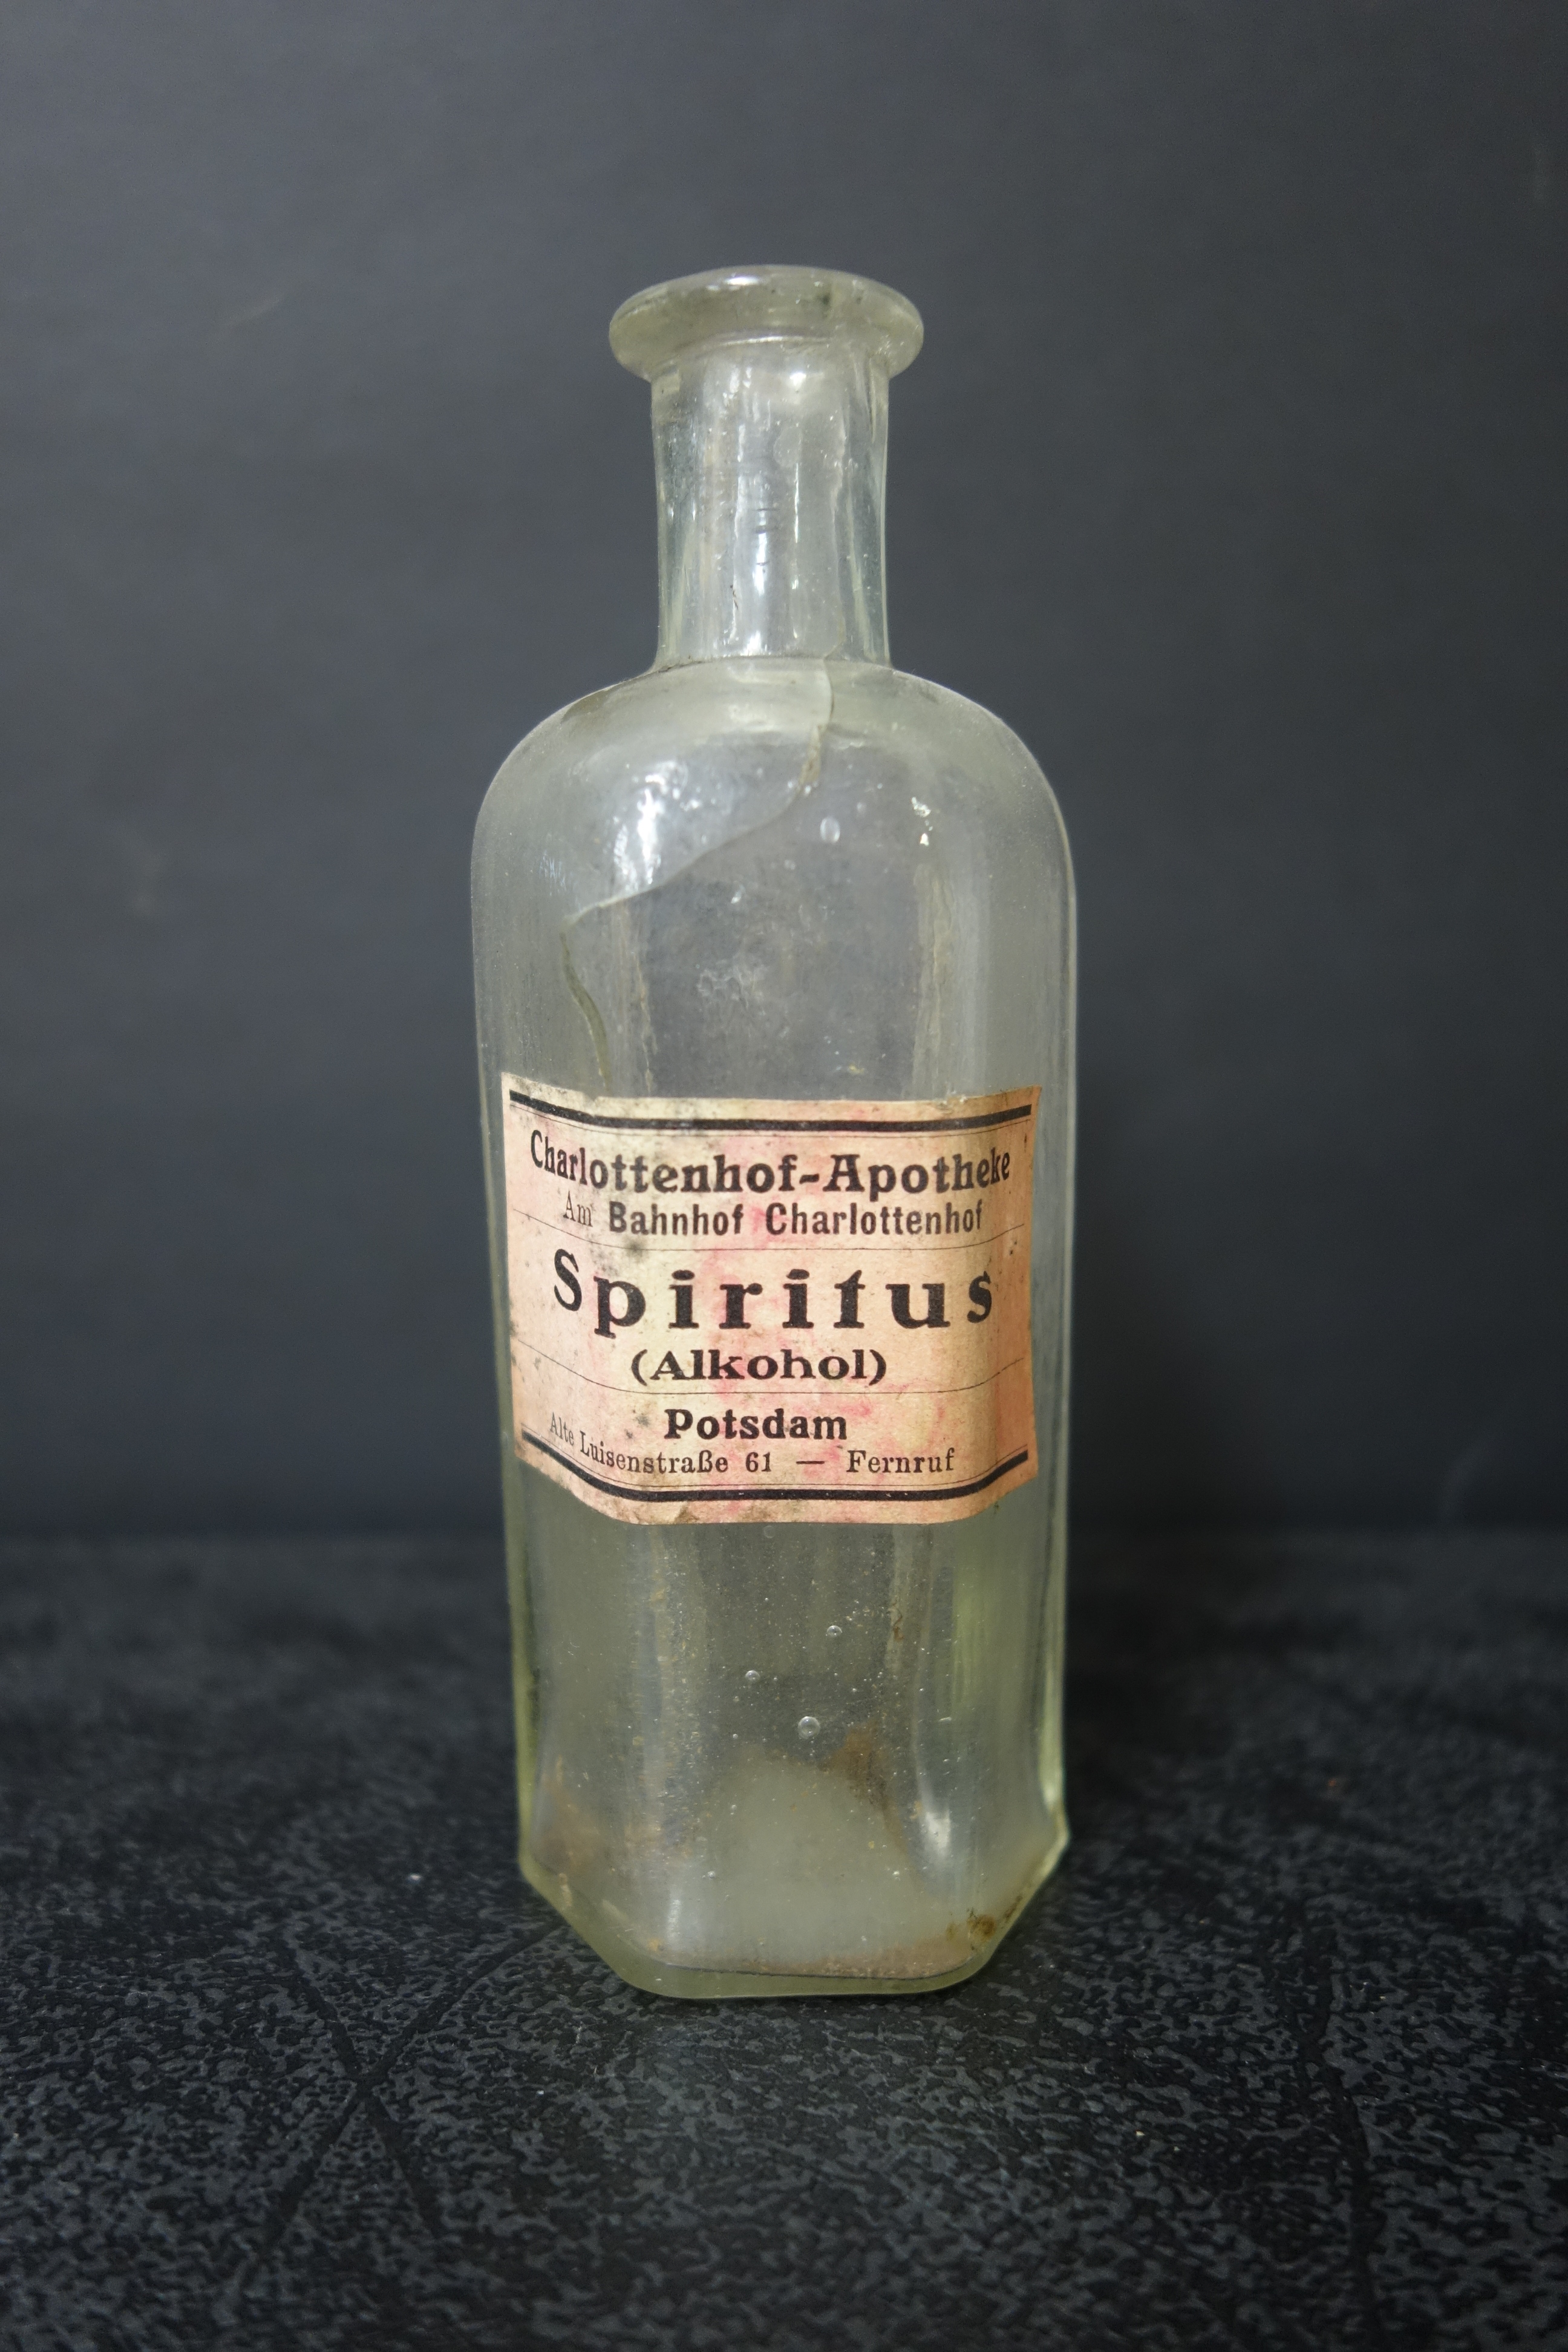 Spiritus-Flasche aus der Potsdamer Charlottenhof-Apotheke